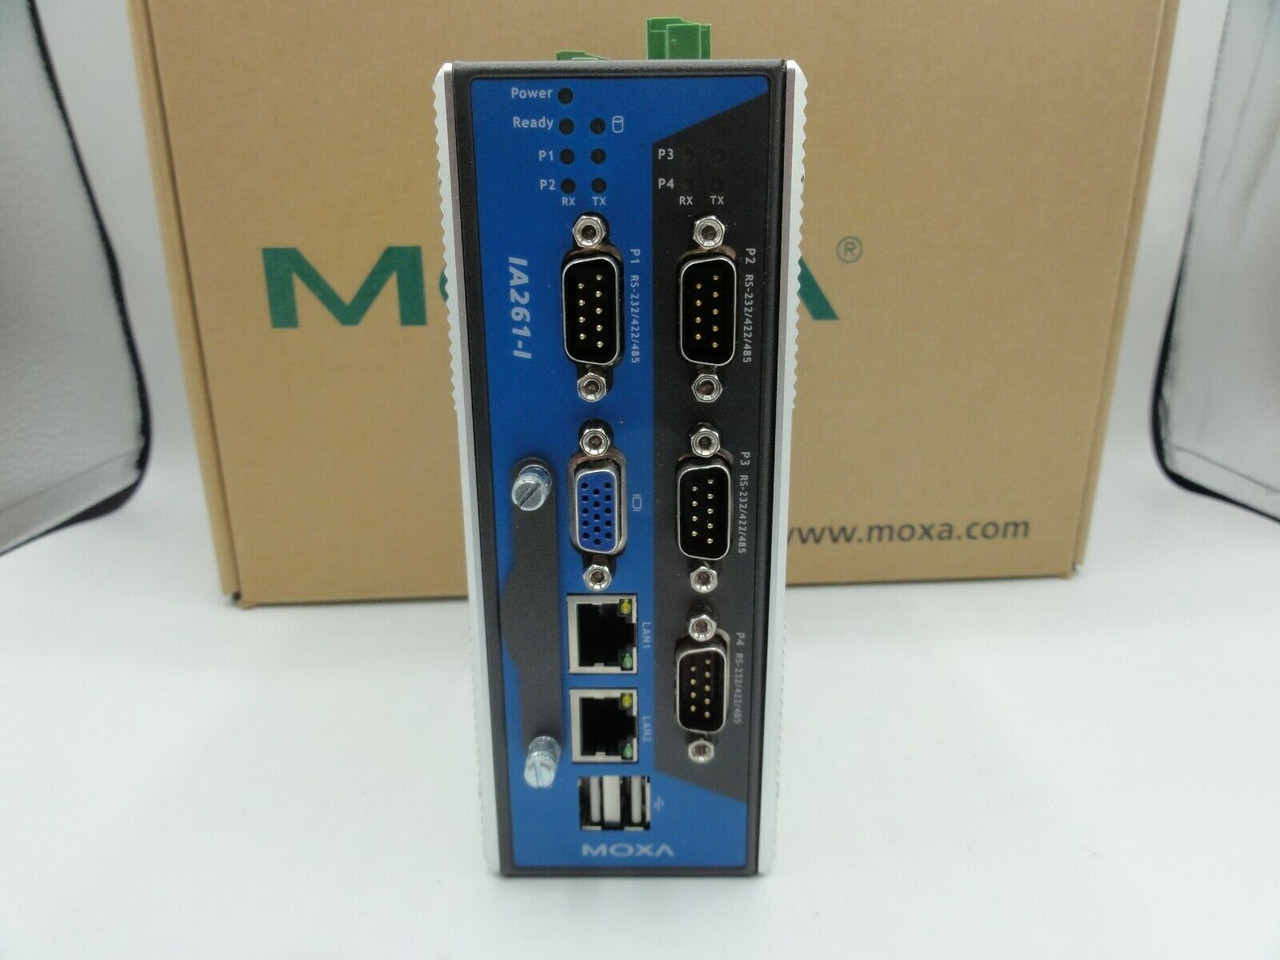 Moxa IA261-1-CE/US/EU V1.2 Embedded Computer Module w/ Guide, Software & P.S.